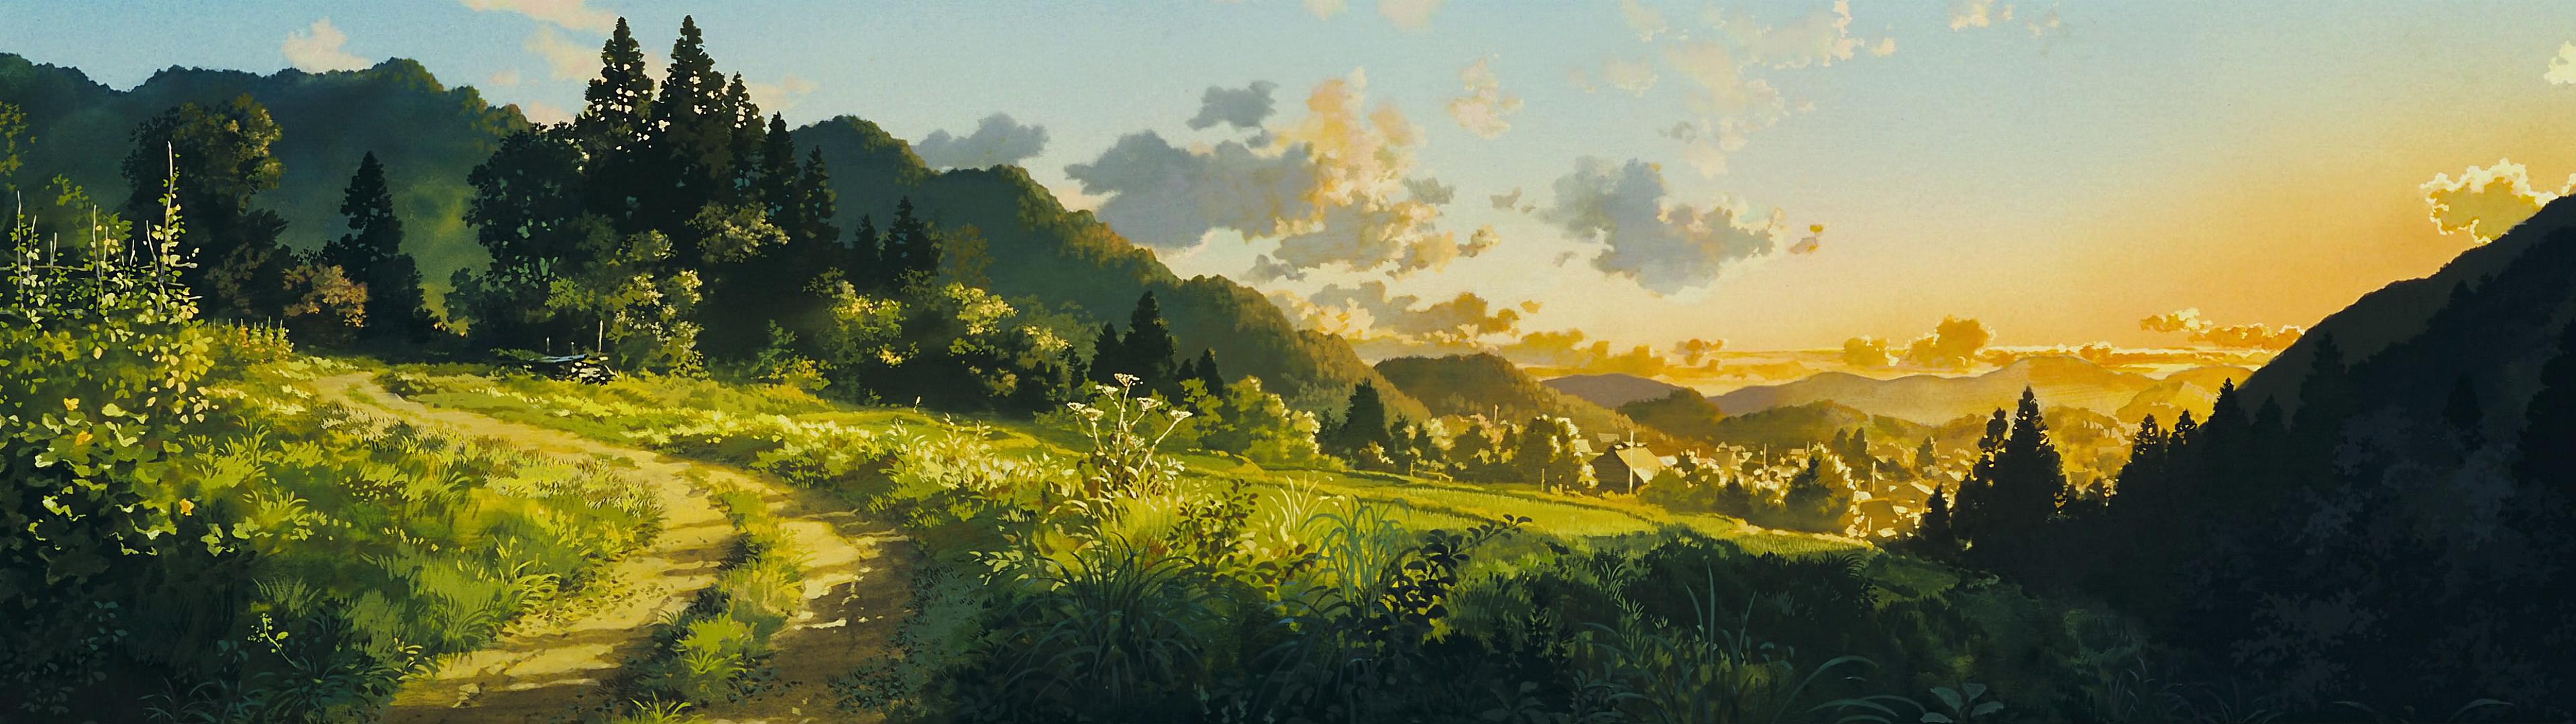 High res 'dual screen' Studio Ghibli desktop wallpapers!